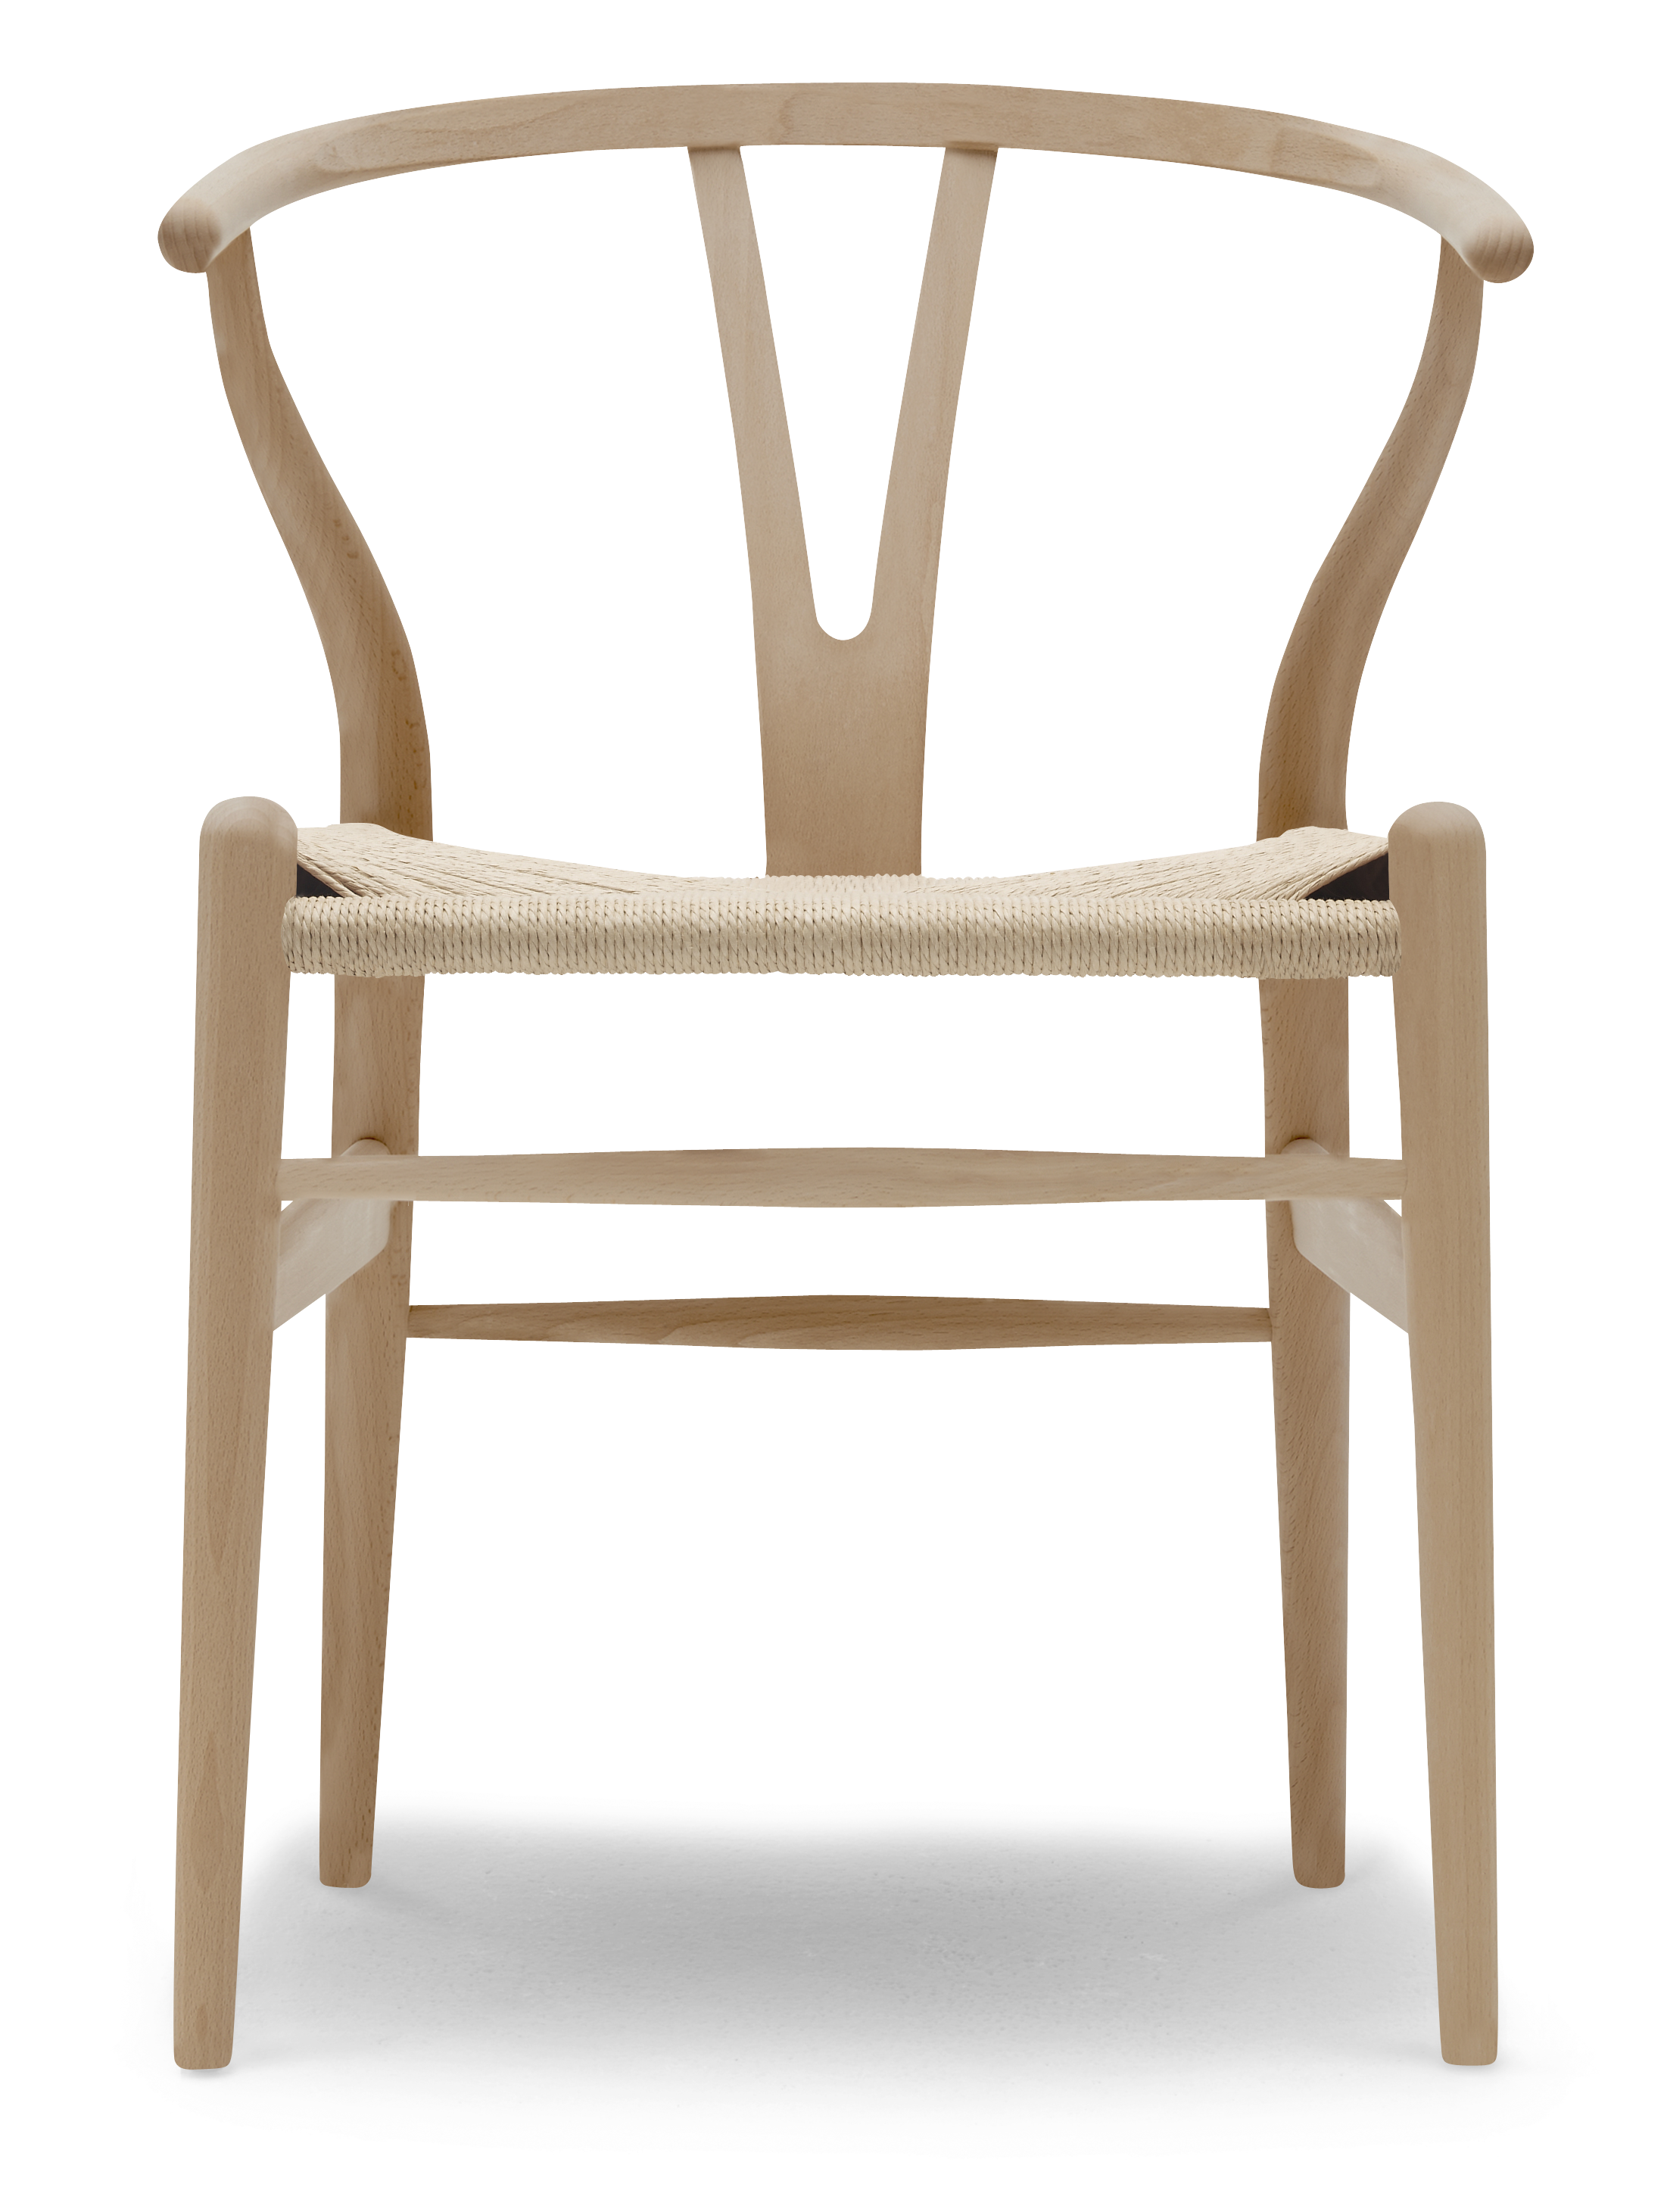 Стул wishbone chair ханса вегнера | мебель - это просто